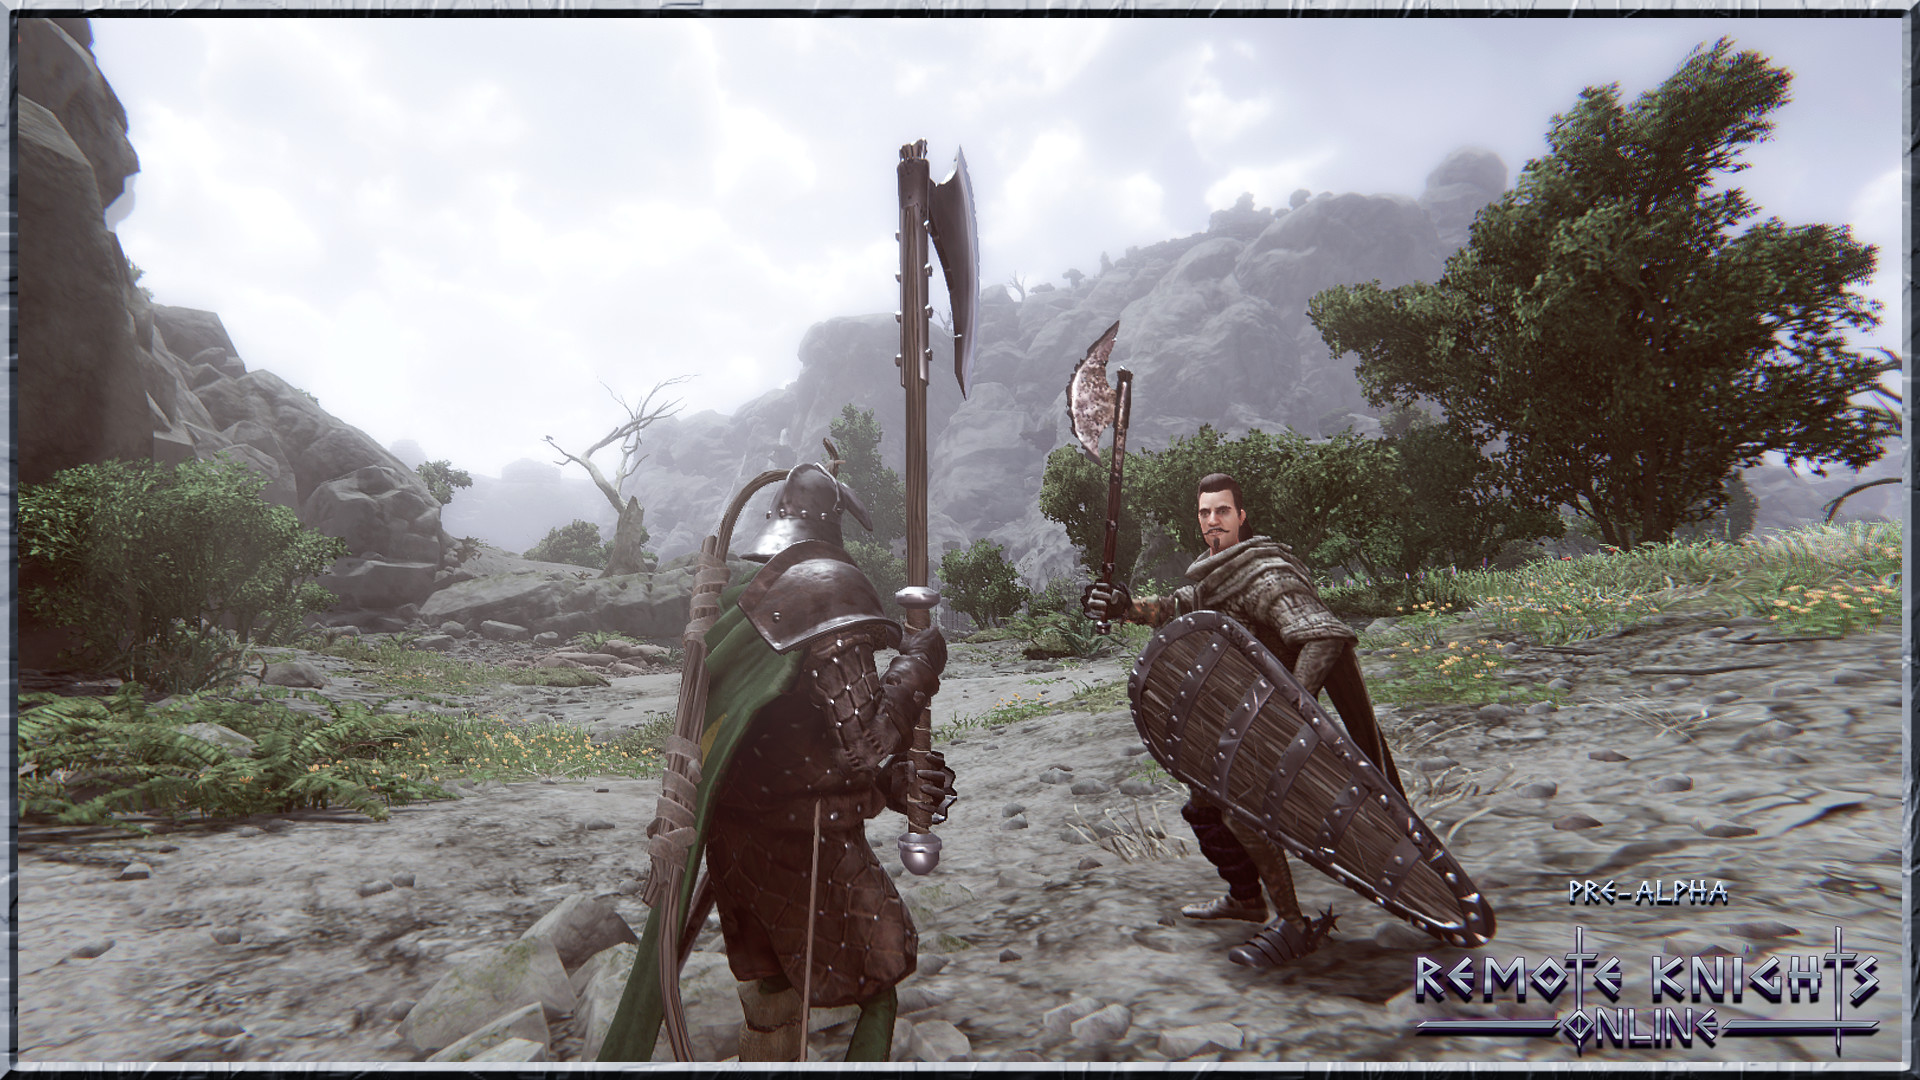 Remote Knights Online screenshot